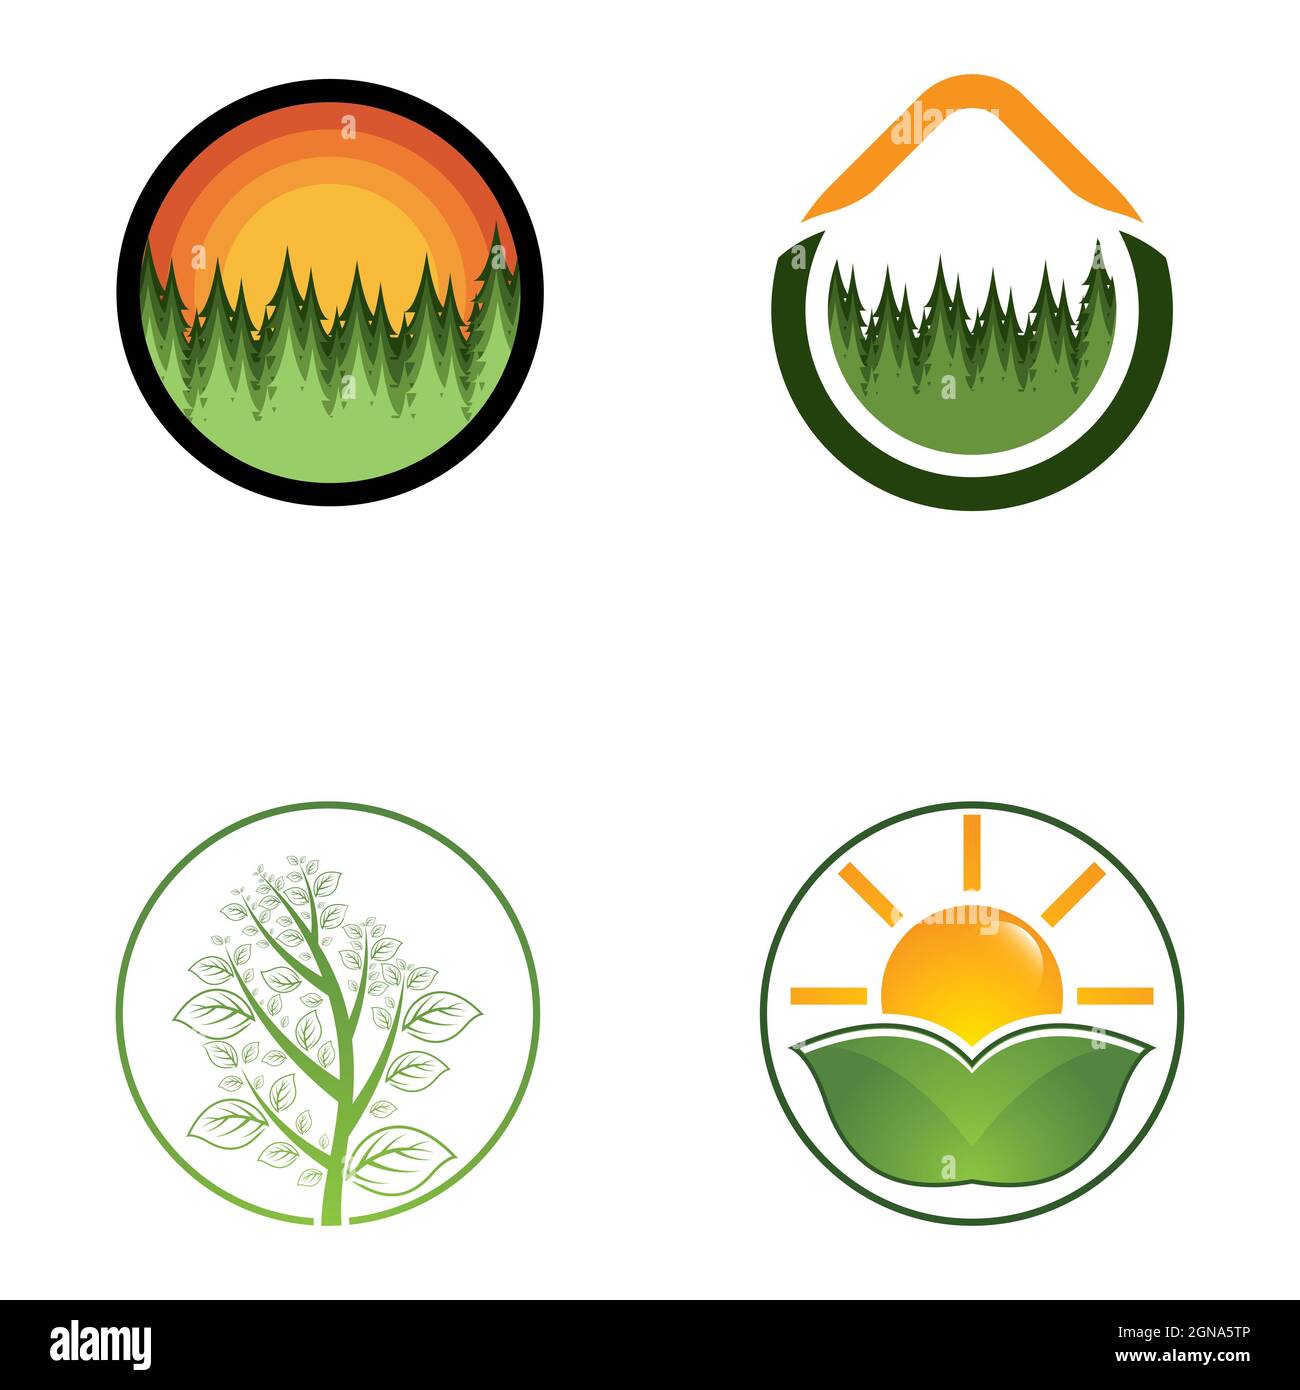 Motif ensemble d'icônes de modèle de logo vectoriel de feuilles d'arbre Banque D'Images